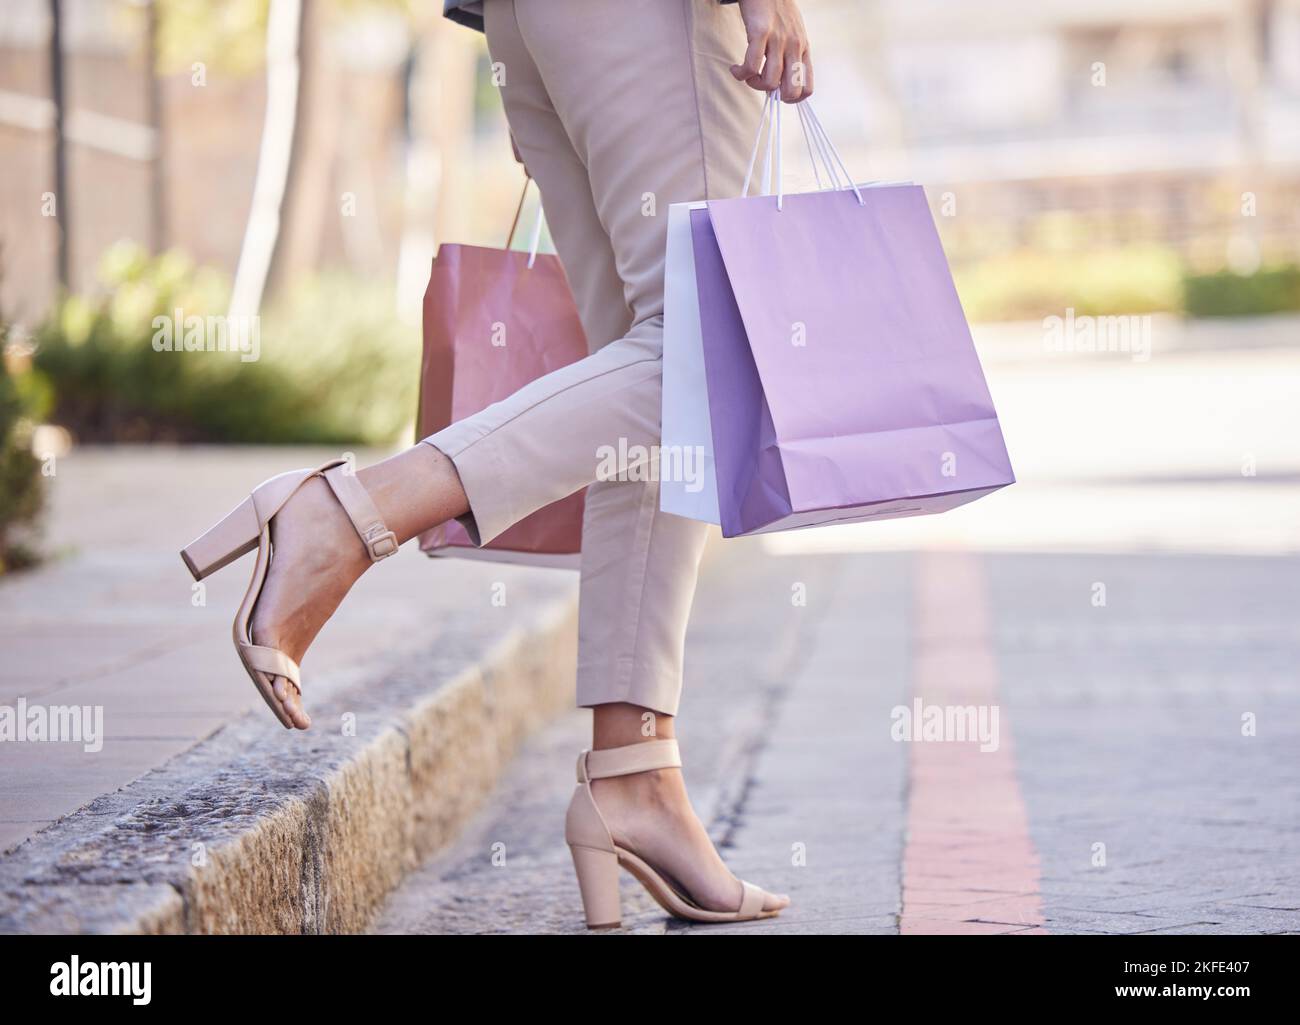 Shopping bag, donna cliente e città strada per la vendita al dettaglio di moda, abbigliamento o lusso. Sconti, vendita e scelta estiva di scarpe, gambe e piedi per bambina Foto Stock